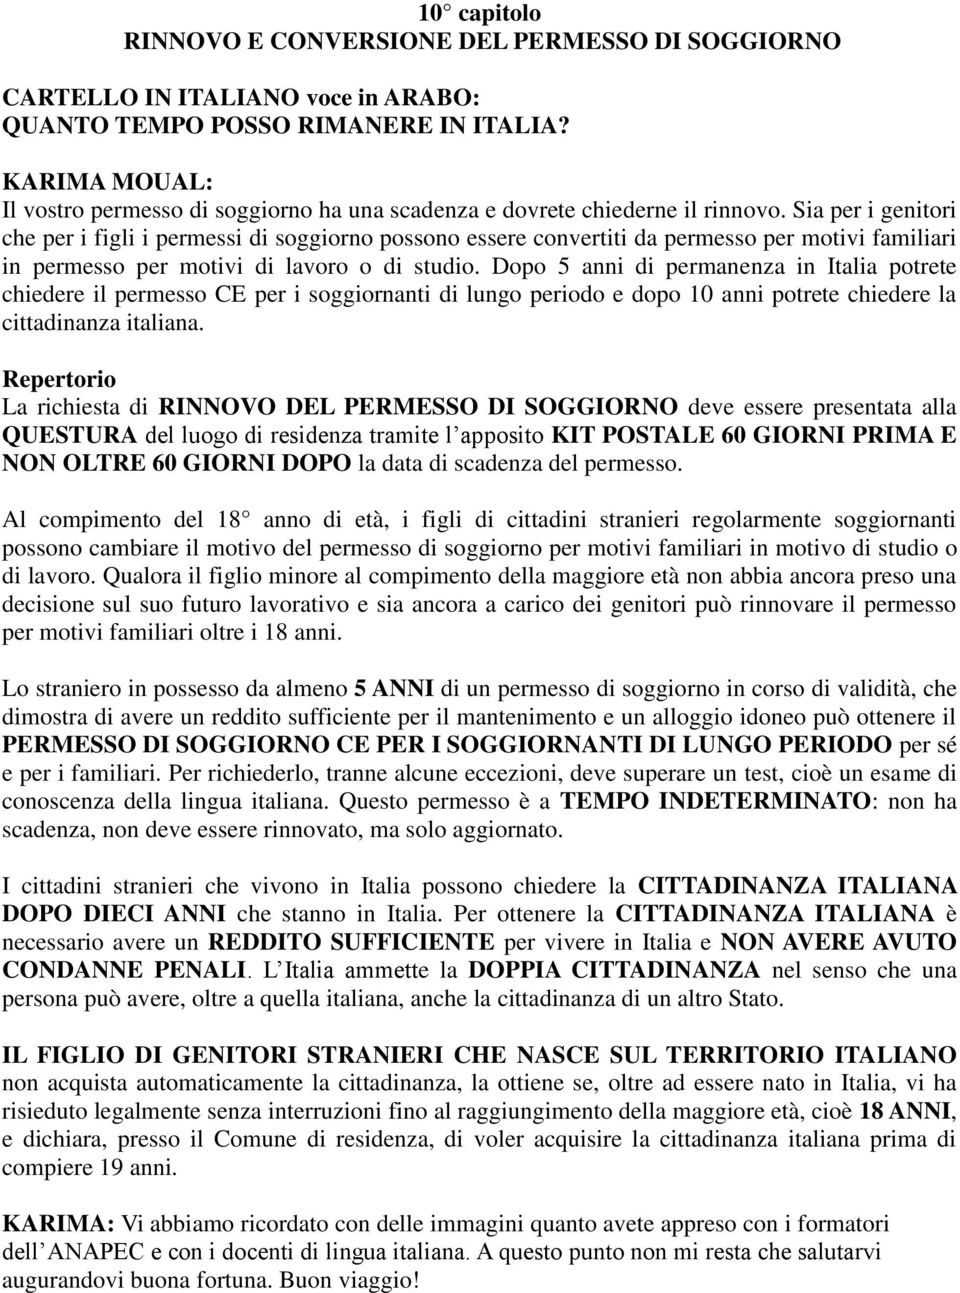 Dopo 5 anni di permanenza in Italia potrete chiedere il permesso CE per i soggiornanti di lungo periodo e dopo 10 anni potrete chiedere la cittadinanza italiana.